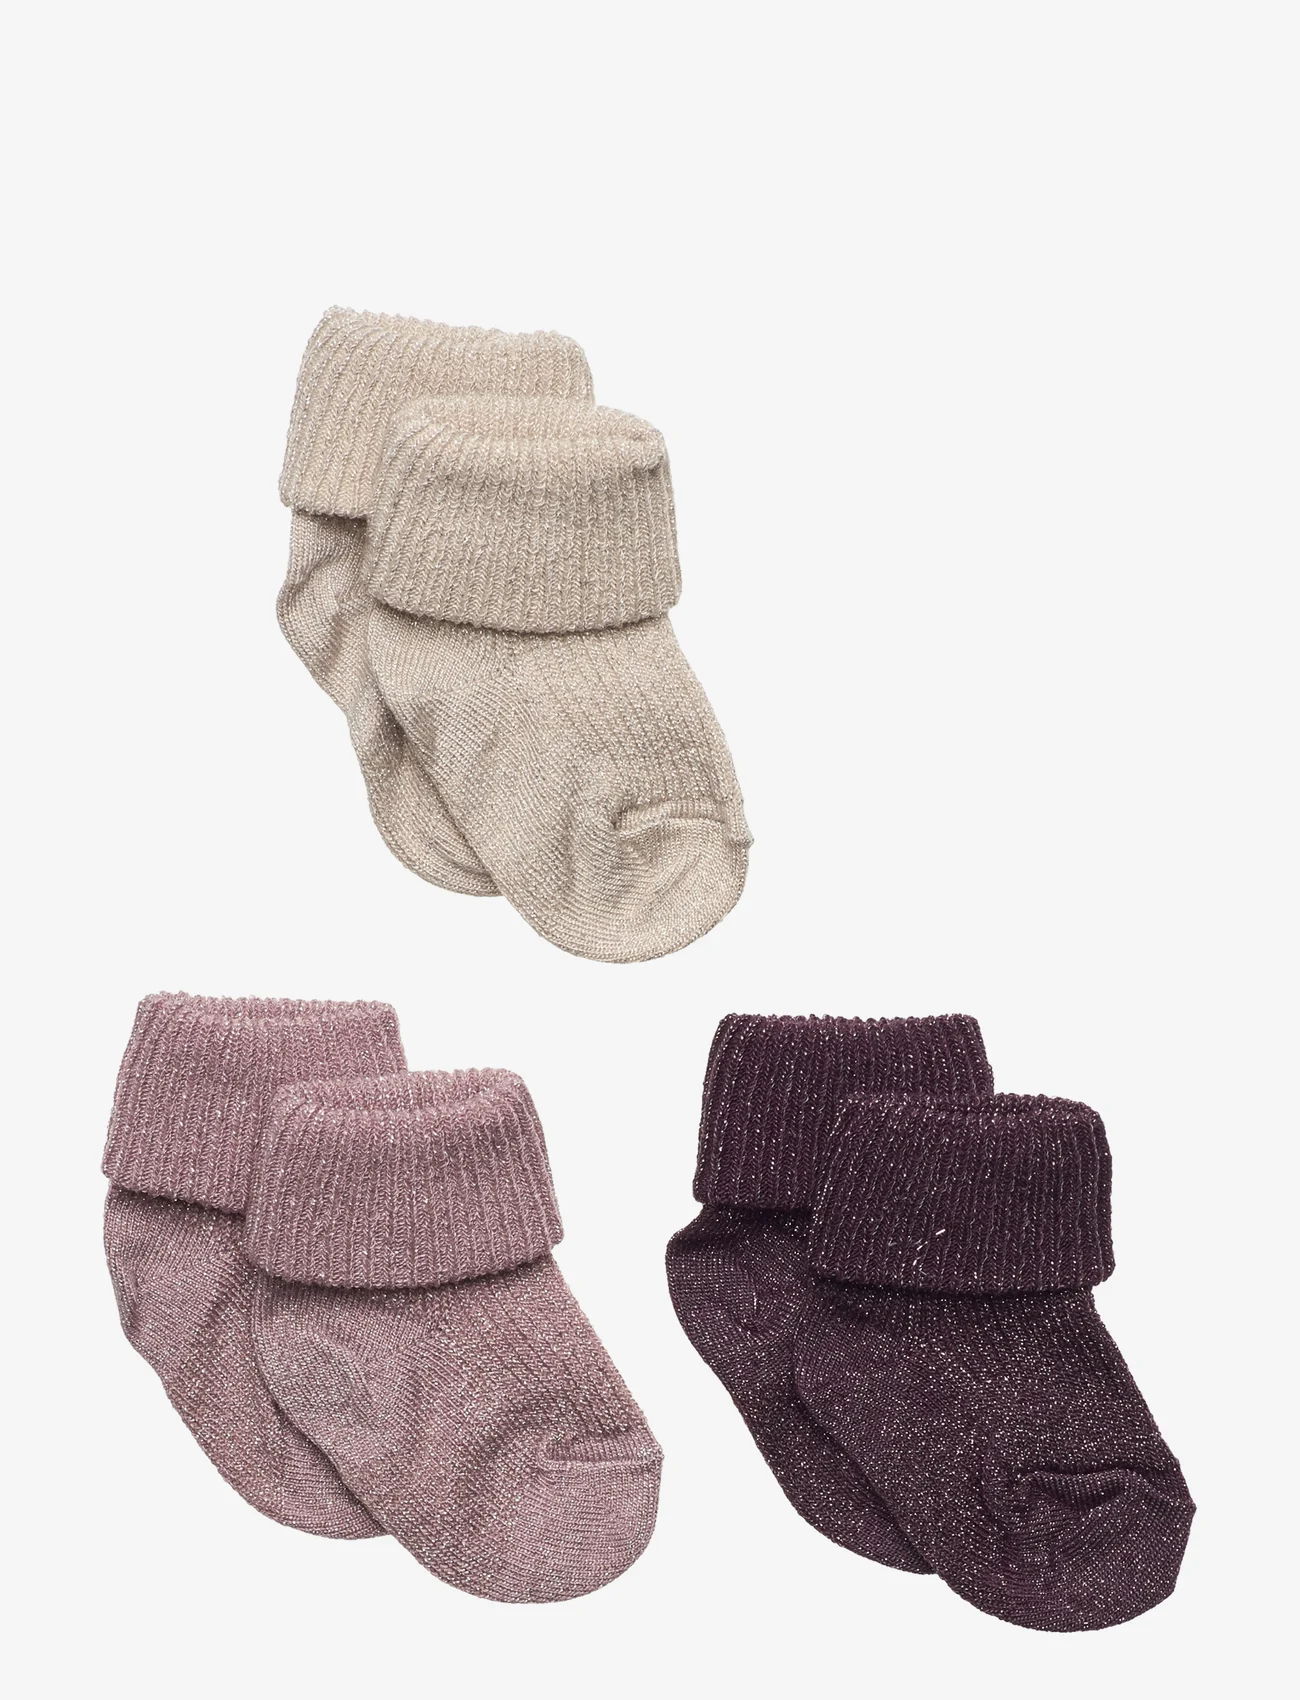 mp Denmark - Ida glitter socks - 3-pack - laveste priser - mauve shadows - 0